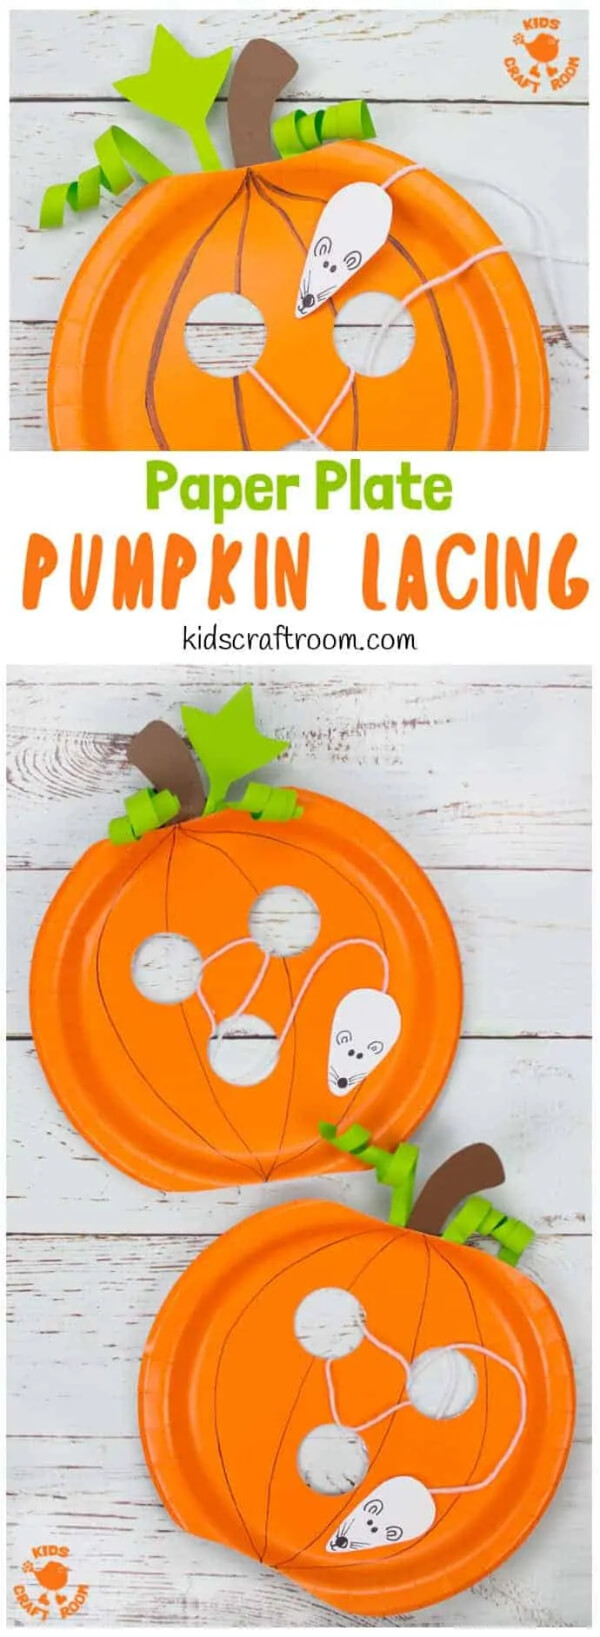 Simple & Cute Pumpkin Craft Using Paper Plate Pumpkin Crafts & Activities for Kids 